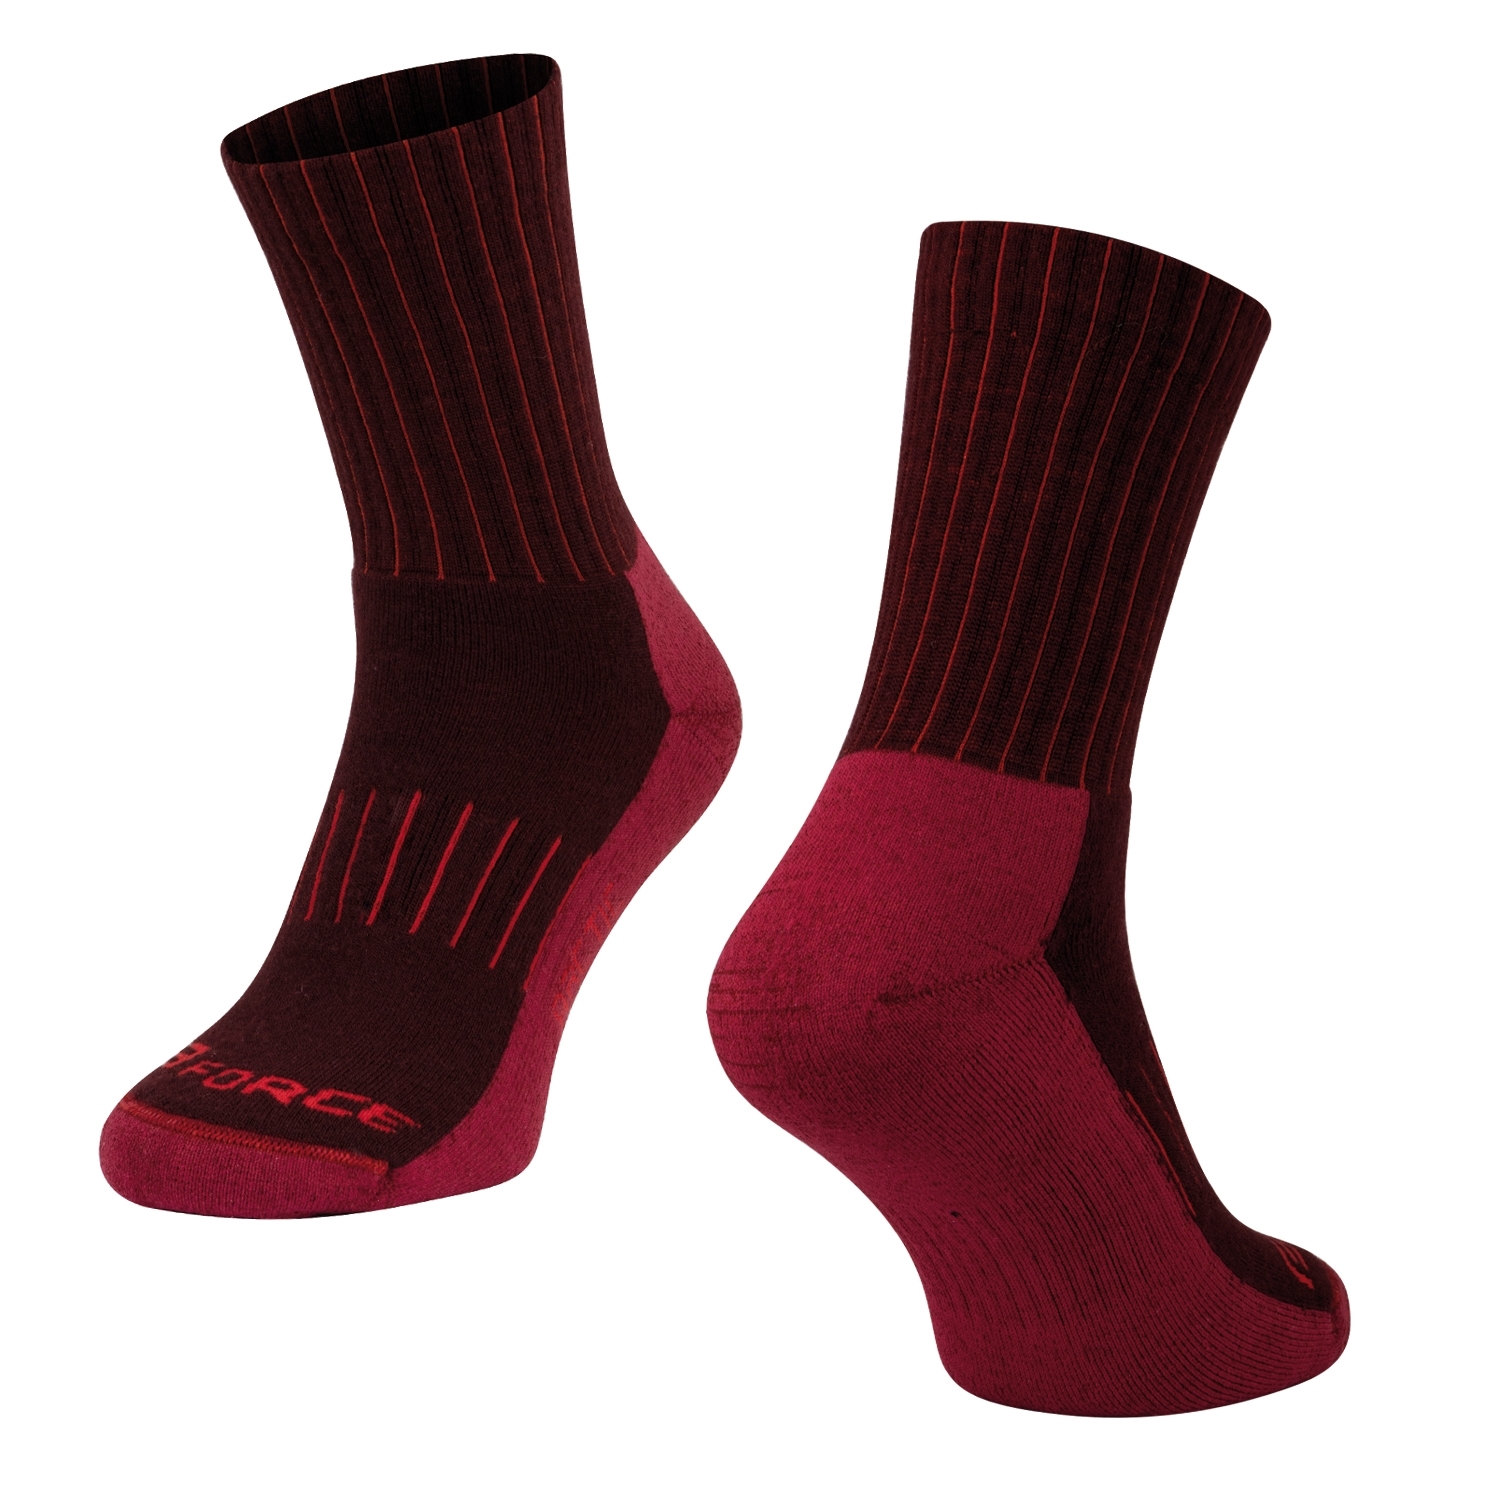 Zimní ponožky FORCE Arctic bordo-červené 36-41